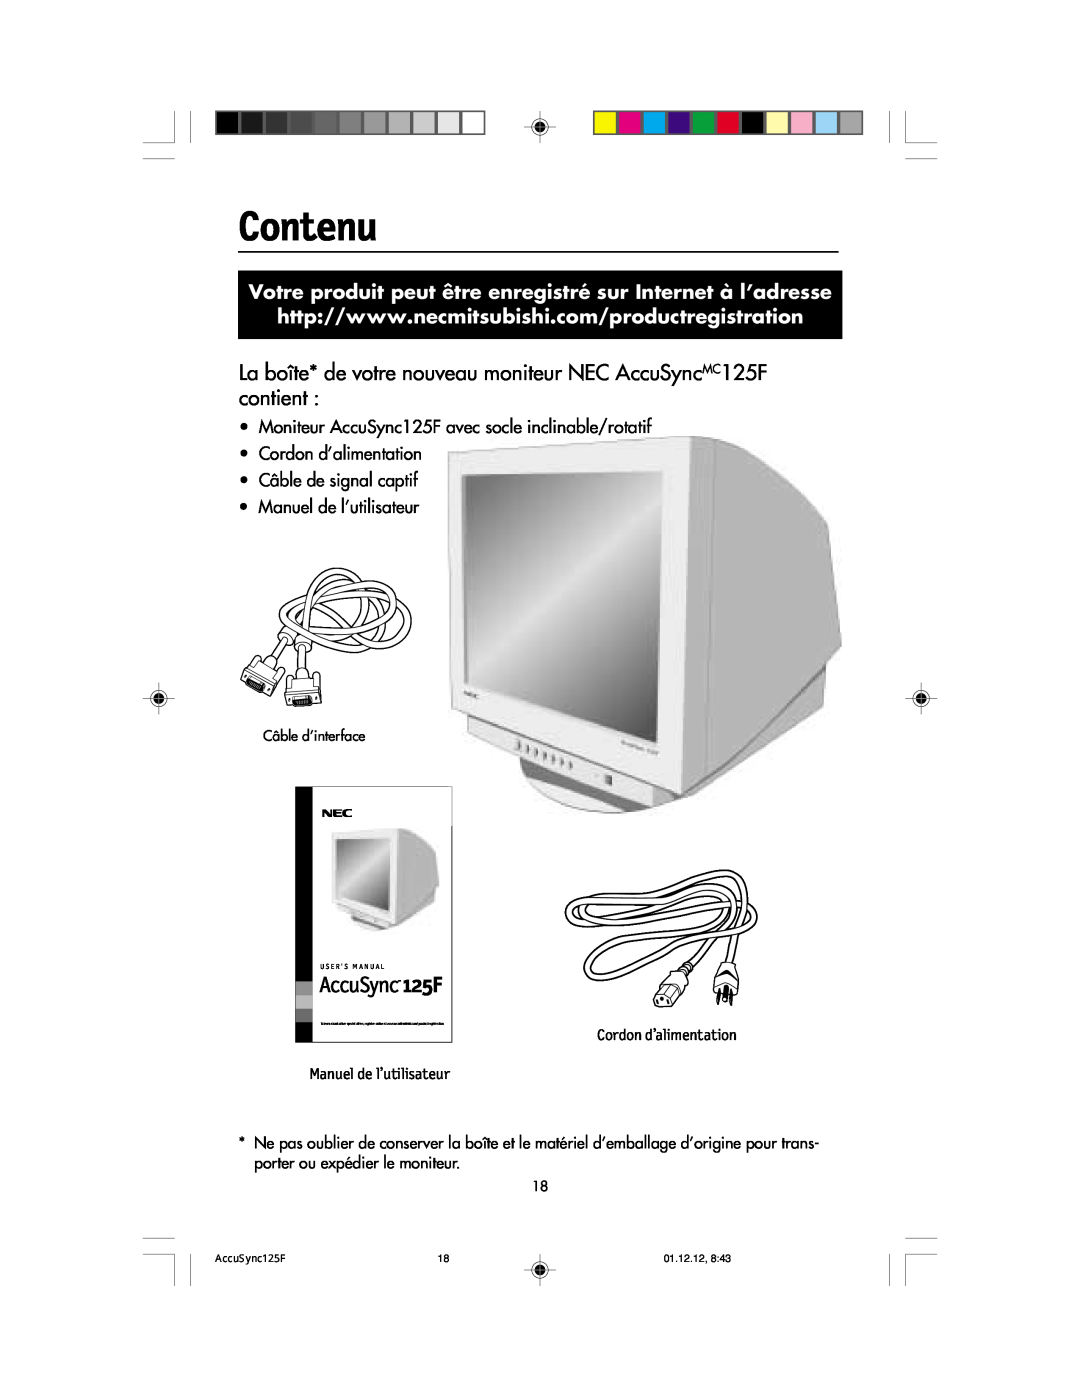 NEC user manual Contenu, La boîte* de votre nouveau moniteur NEC AccuSyncMC125F contient, AccuSync 125F, 01.12.12 